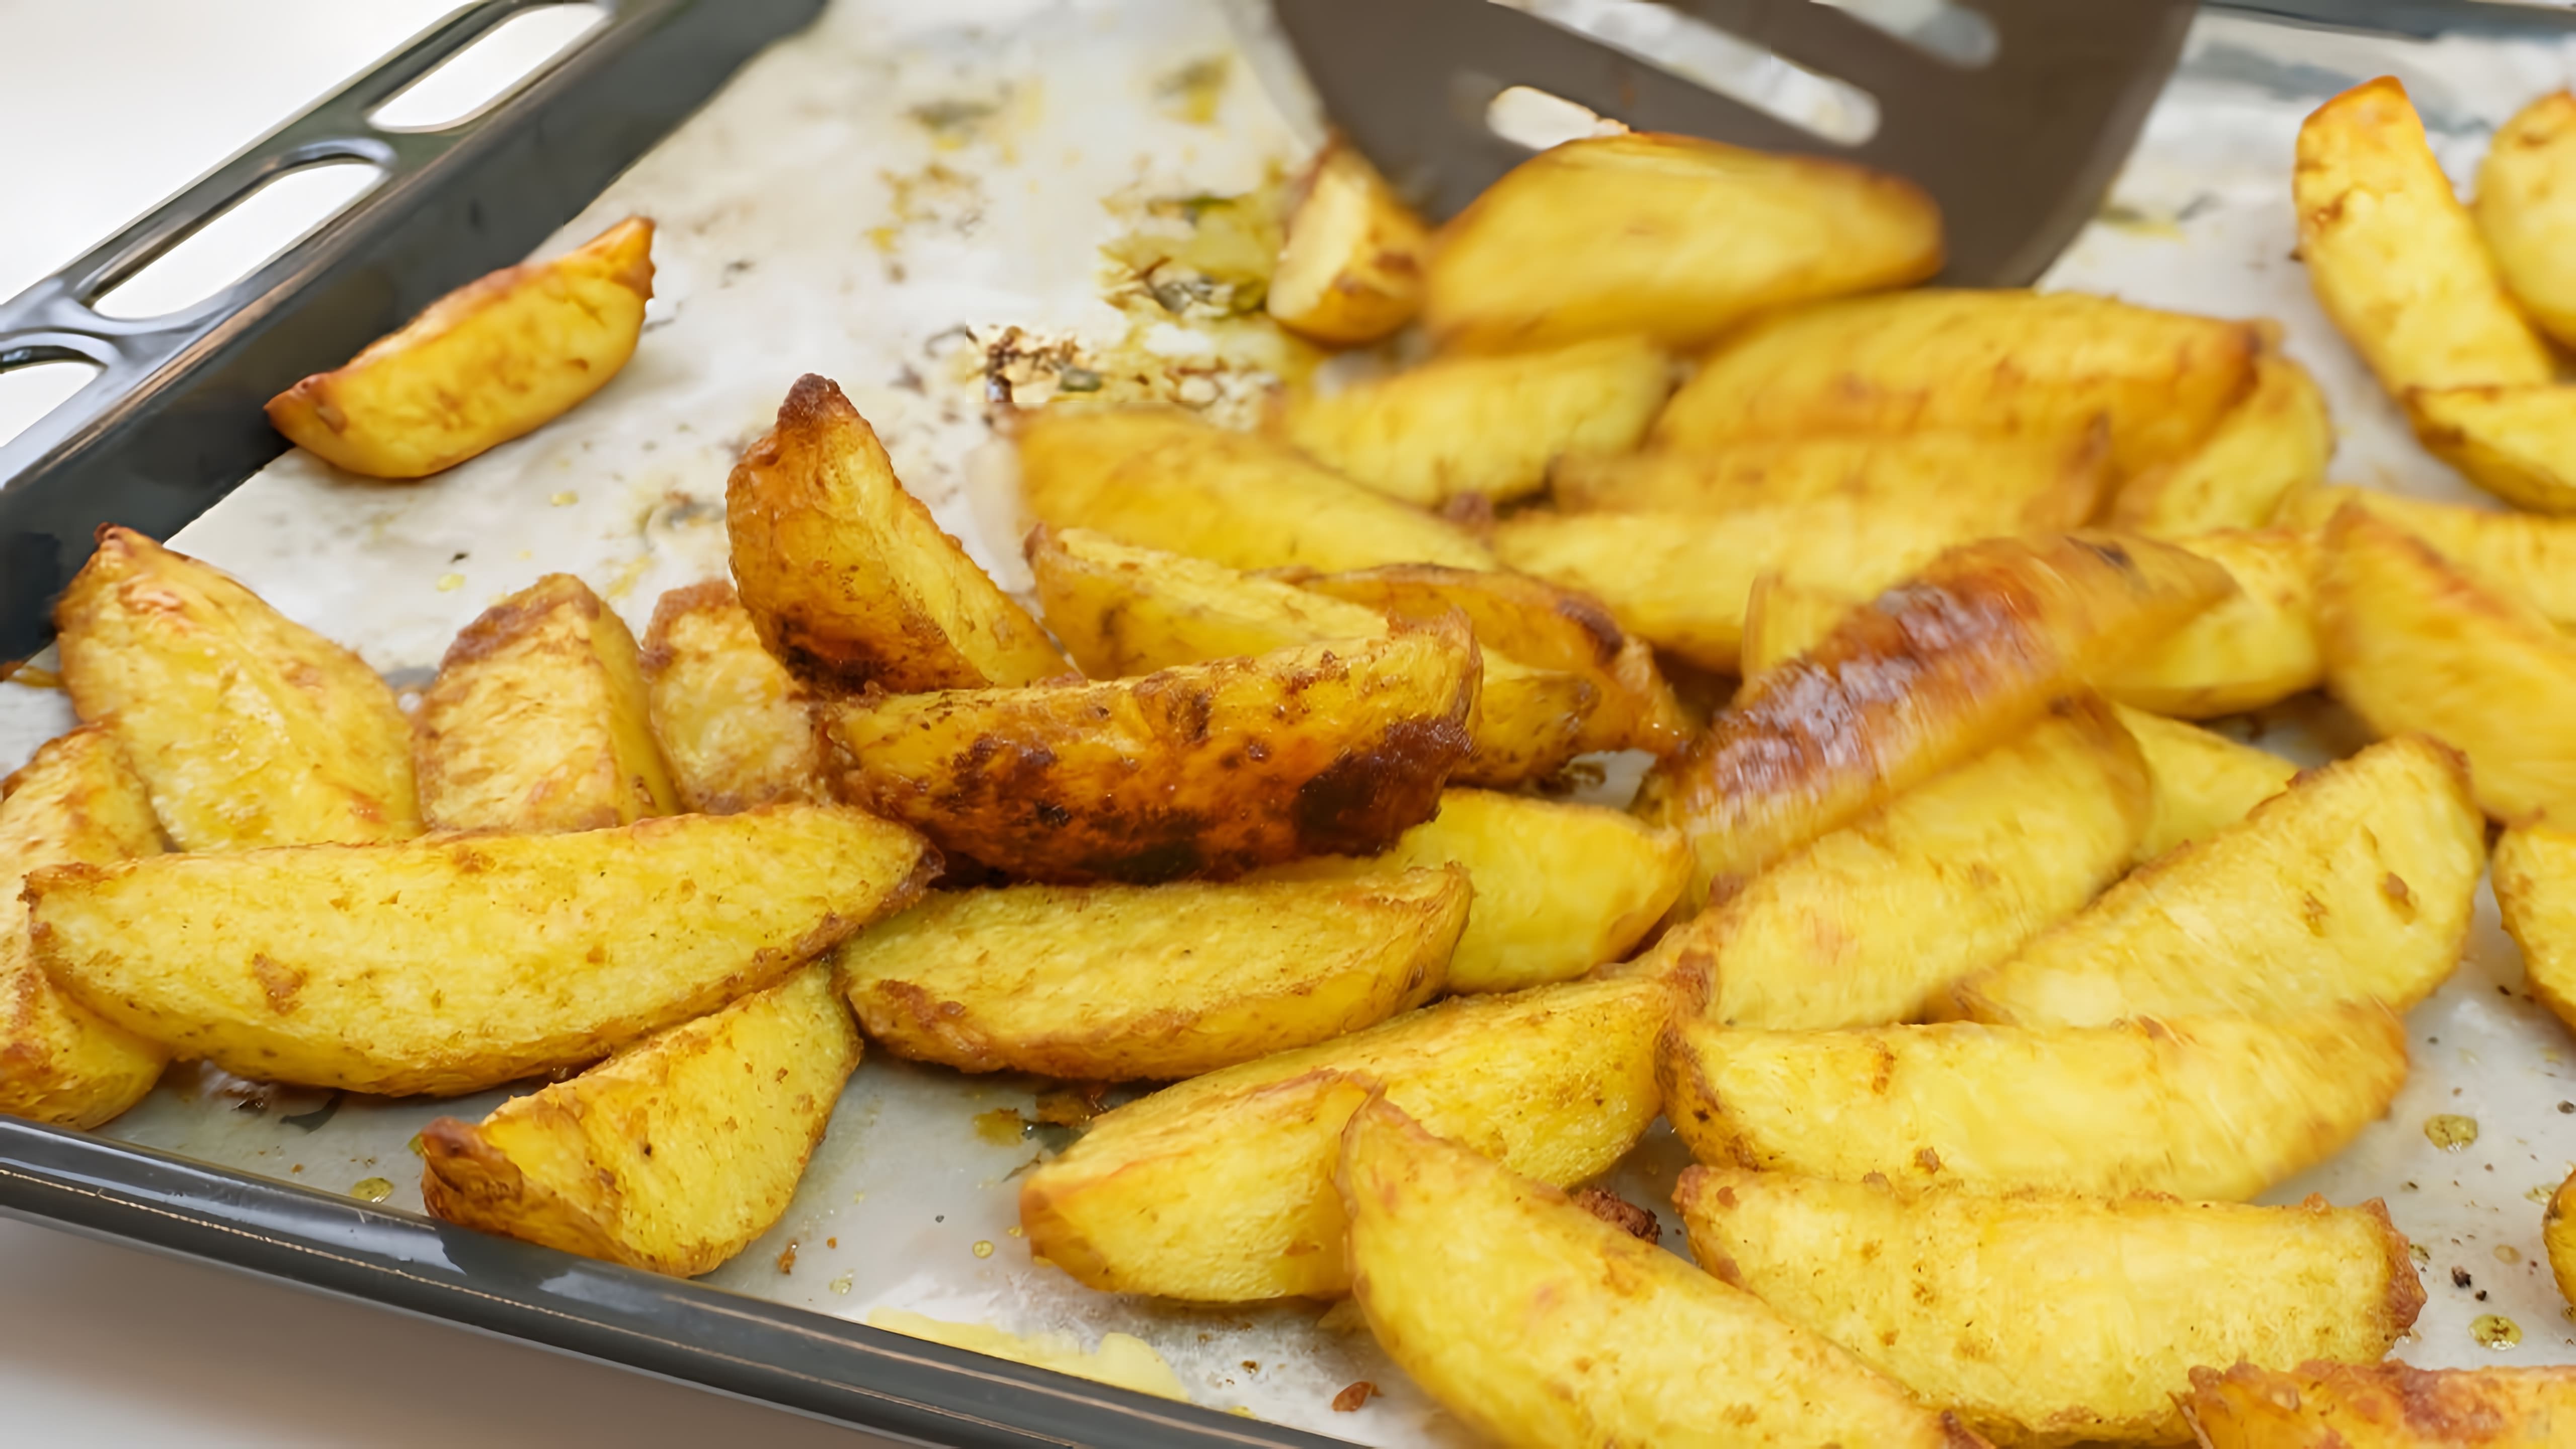 В этом видео демонстрируется рецепт картофеля "по-деревенски" с хрустящей корочкой и нежной серединкой